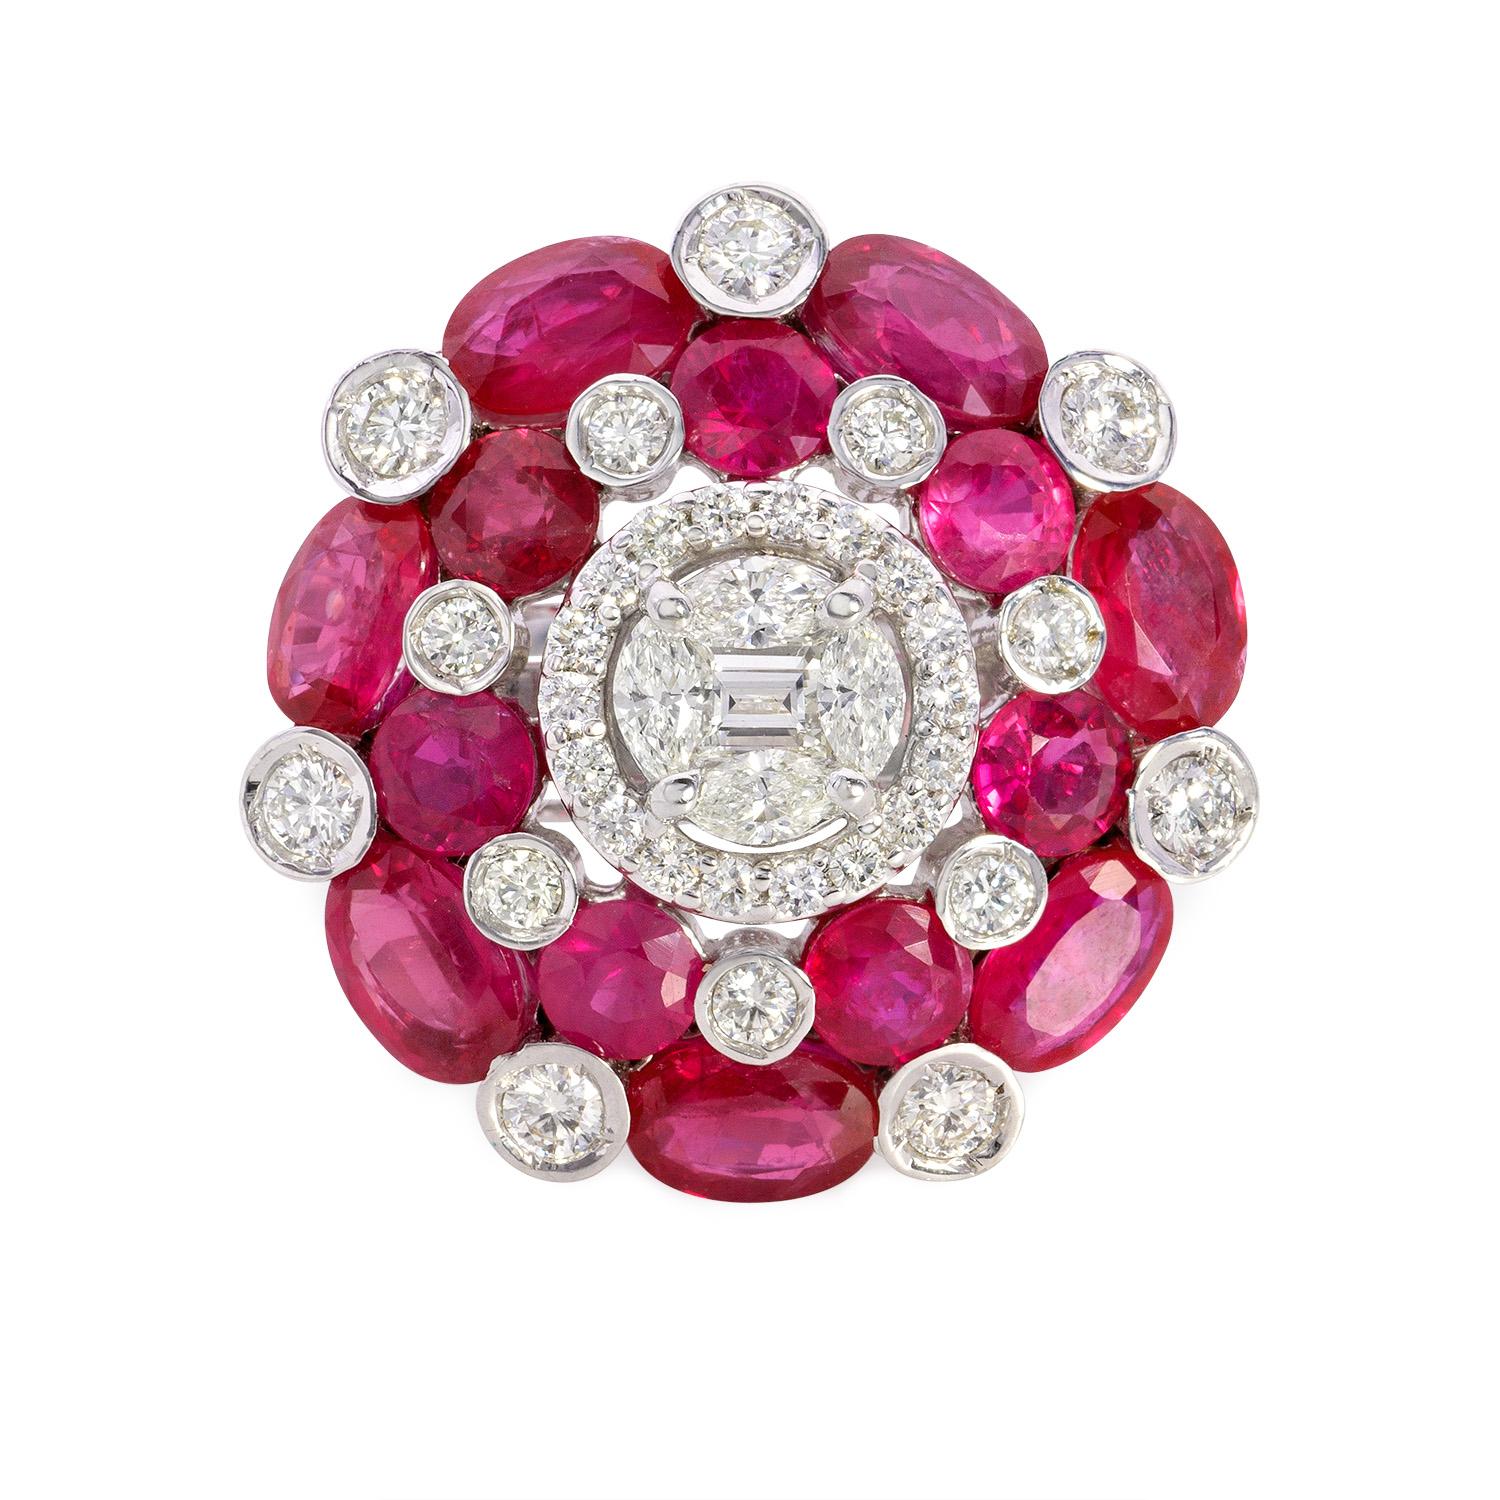 Avec 7 carats de rubis naturels de Birmanie, assis sur un lit de diamants, le Ziya est réalisé en or 14K. Associez-les à nos boucles d'oreilles Ziya.

Détails des pierres précieuses
Rubis naturel
Type 	Rubis naturel 
Couleur	Rouge
Clarté 	Bien
Poids